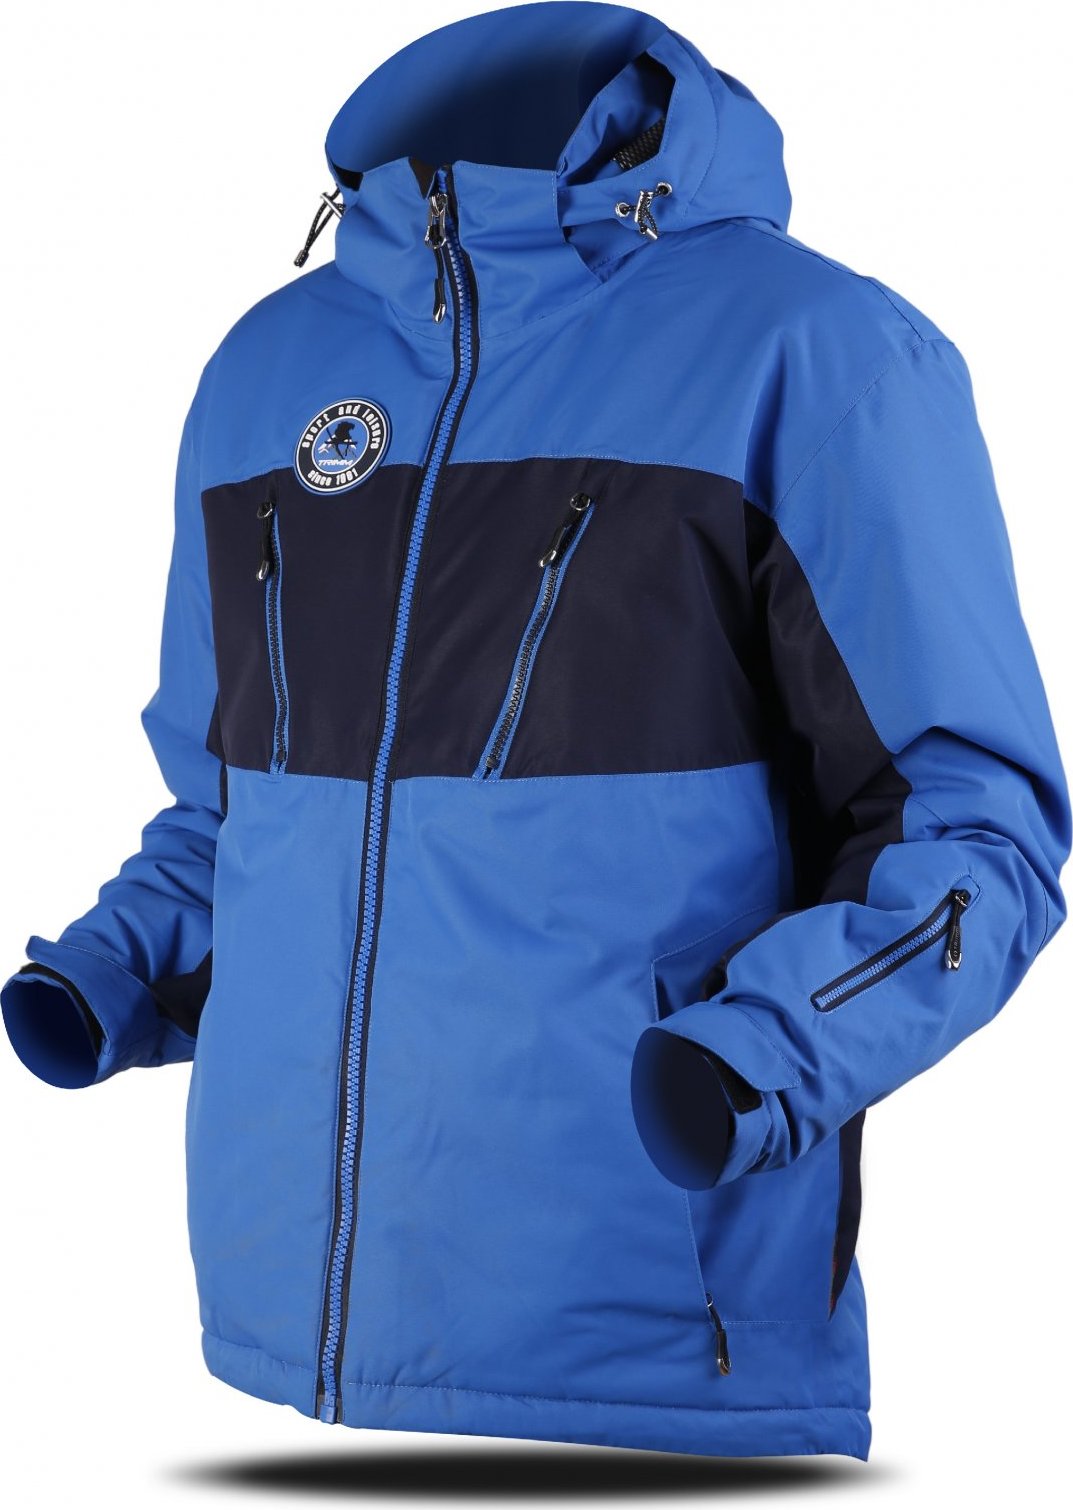 Pánská lyžařská bunda TRIMM Dynamit modrá Velikost: XL, Barva: jeans blue/ navy